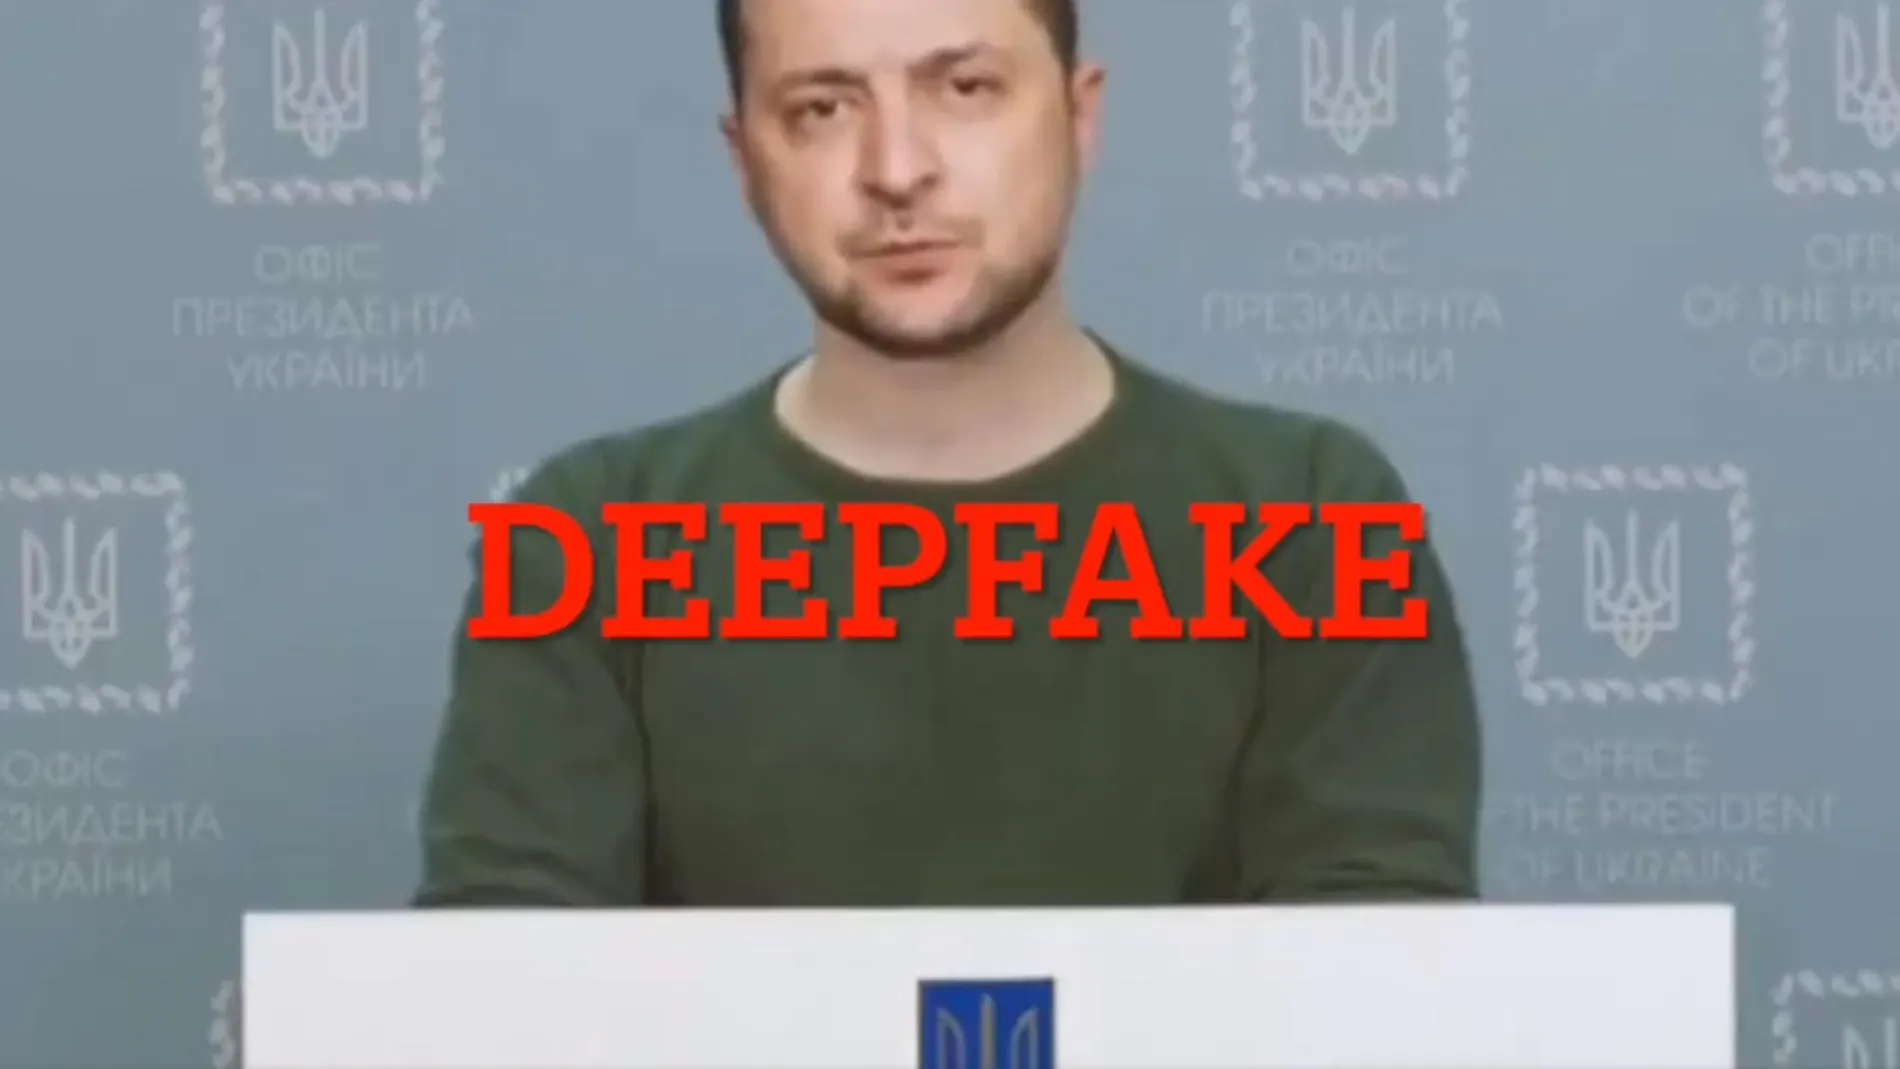 Un momento del vídeo "deepfake" en el que Zelensky pide a las tropas de Ucrania que depongan las armas.